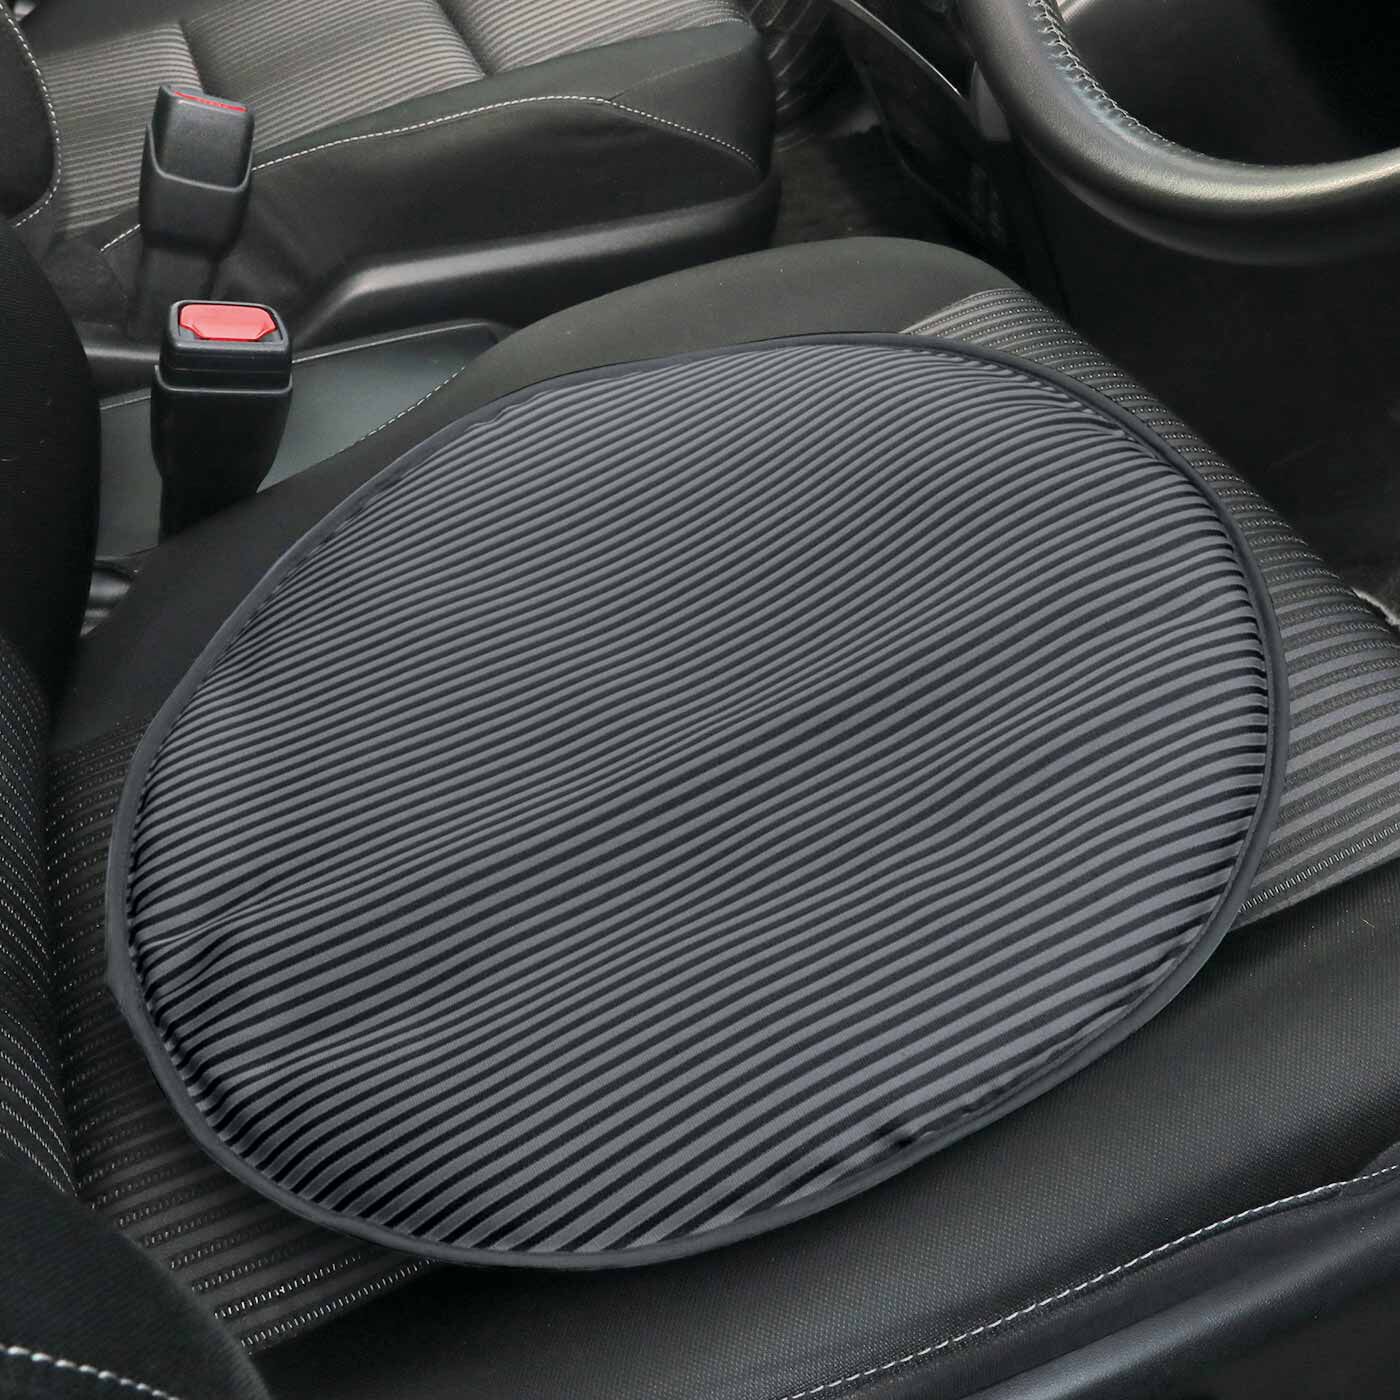 L'AMIPLUS|ラミプリュス　ひっかけて簡単に装着 敷いて座れるハンドルカバー|運転中はシートに敷いてふっくら快適。